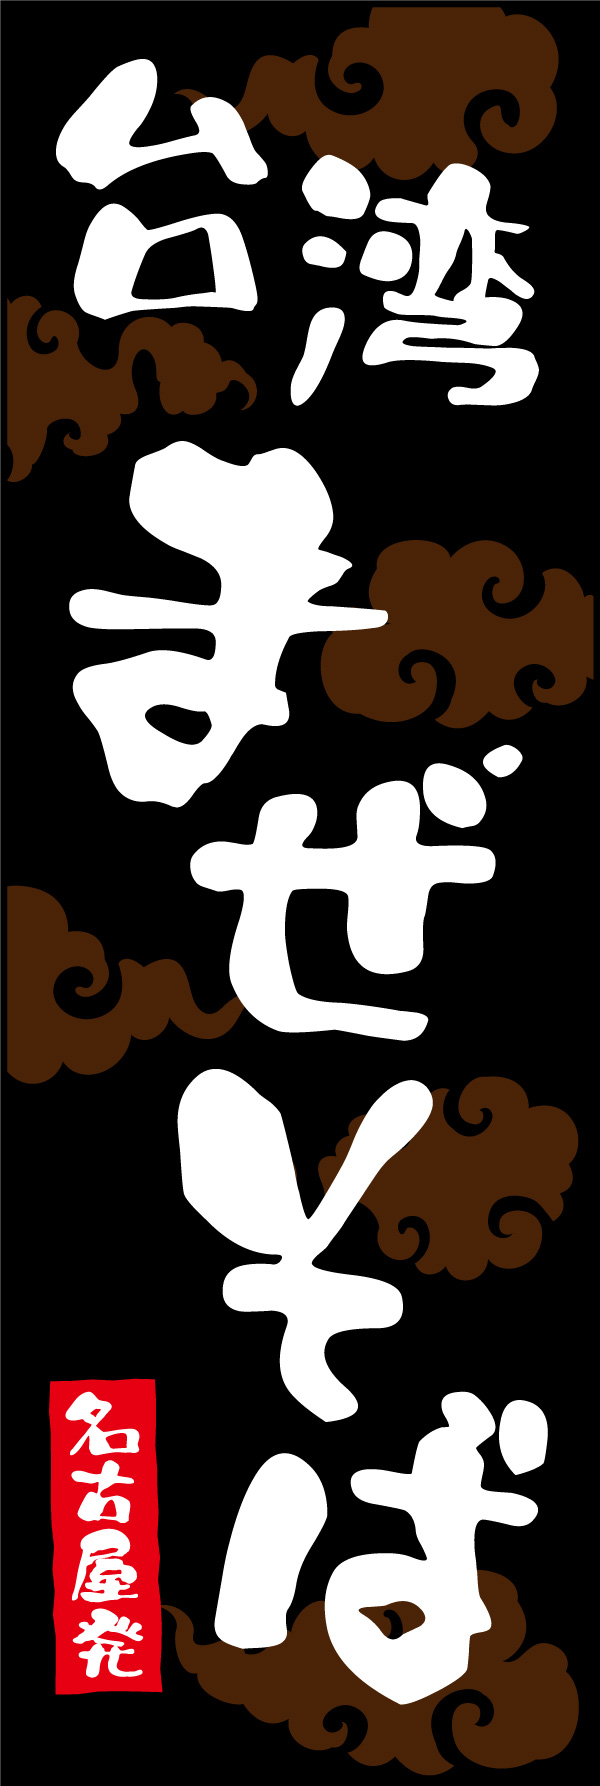 台湾まぜそば 01「台湾まぜそば」ののぼりです。台湾まぜそば発祥の名古屋をイメージし、本家のような勢いのある文字で大胆にレイアウトしました。(Y.M) 